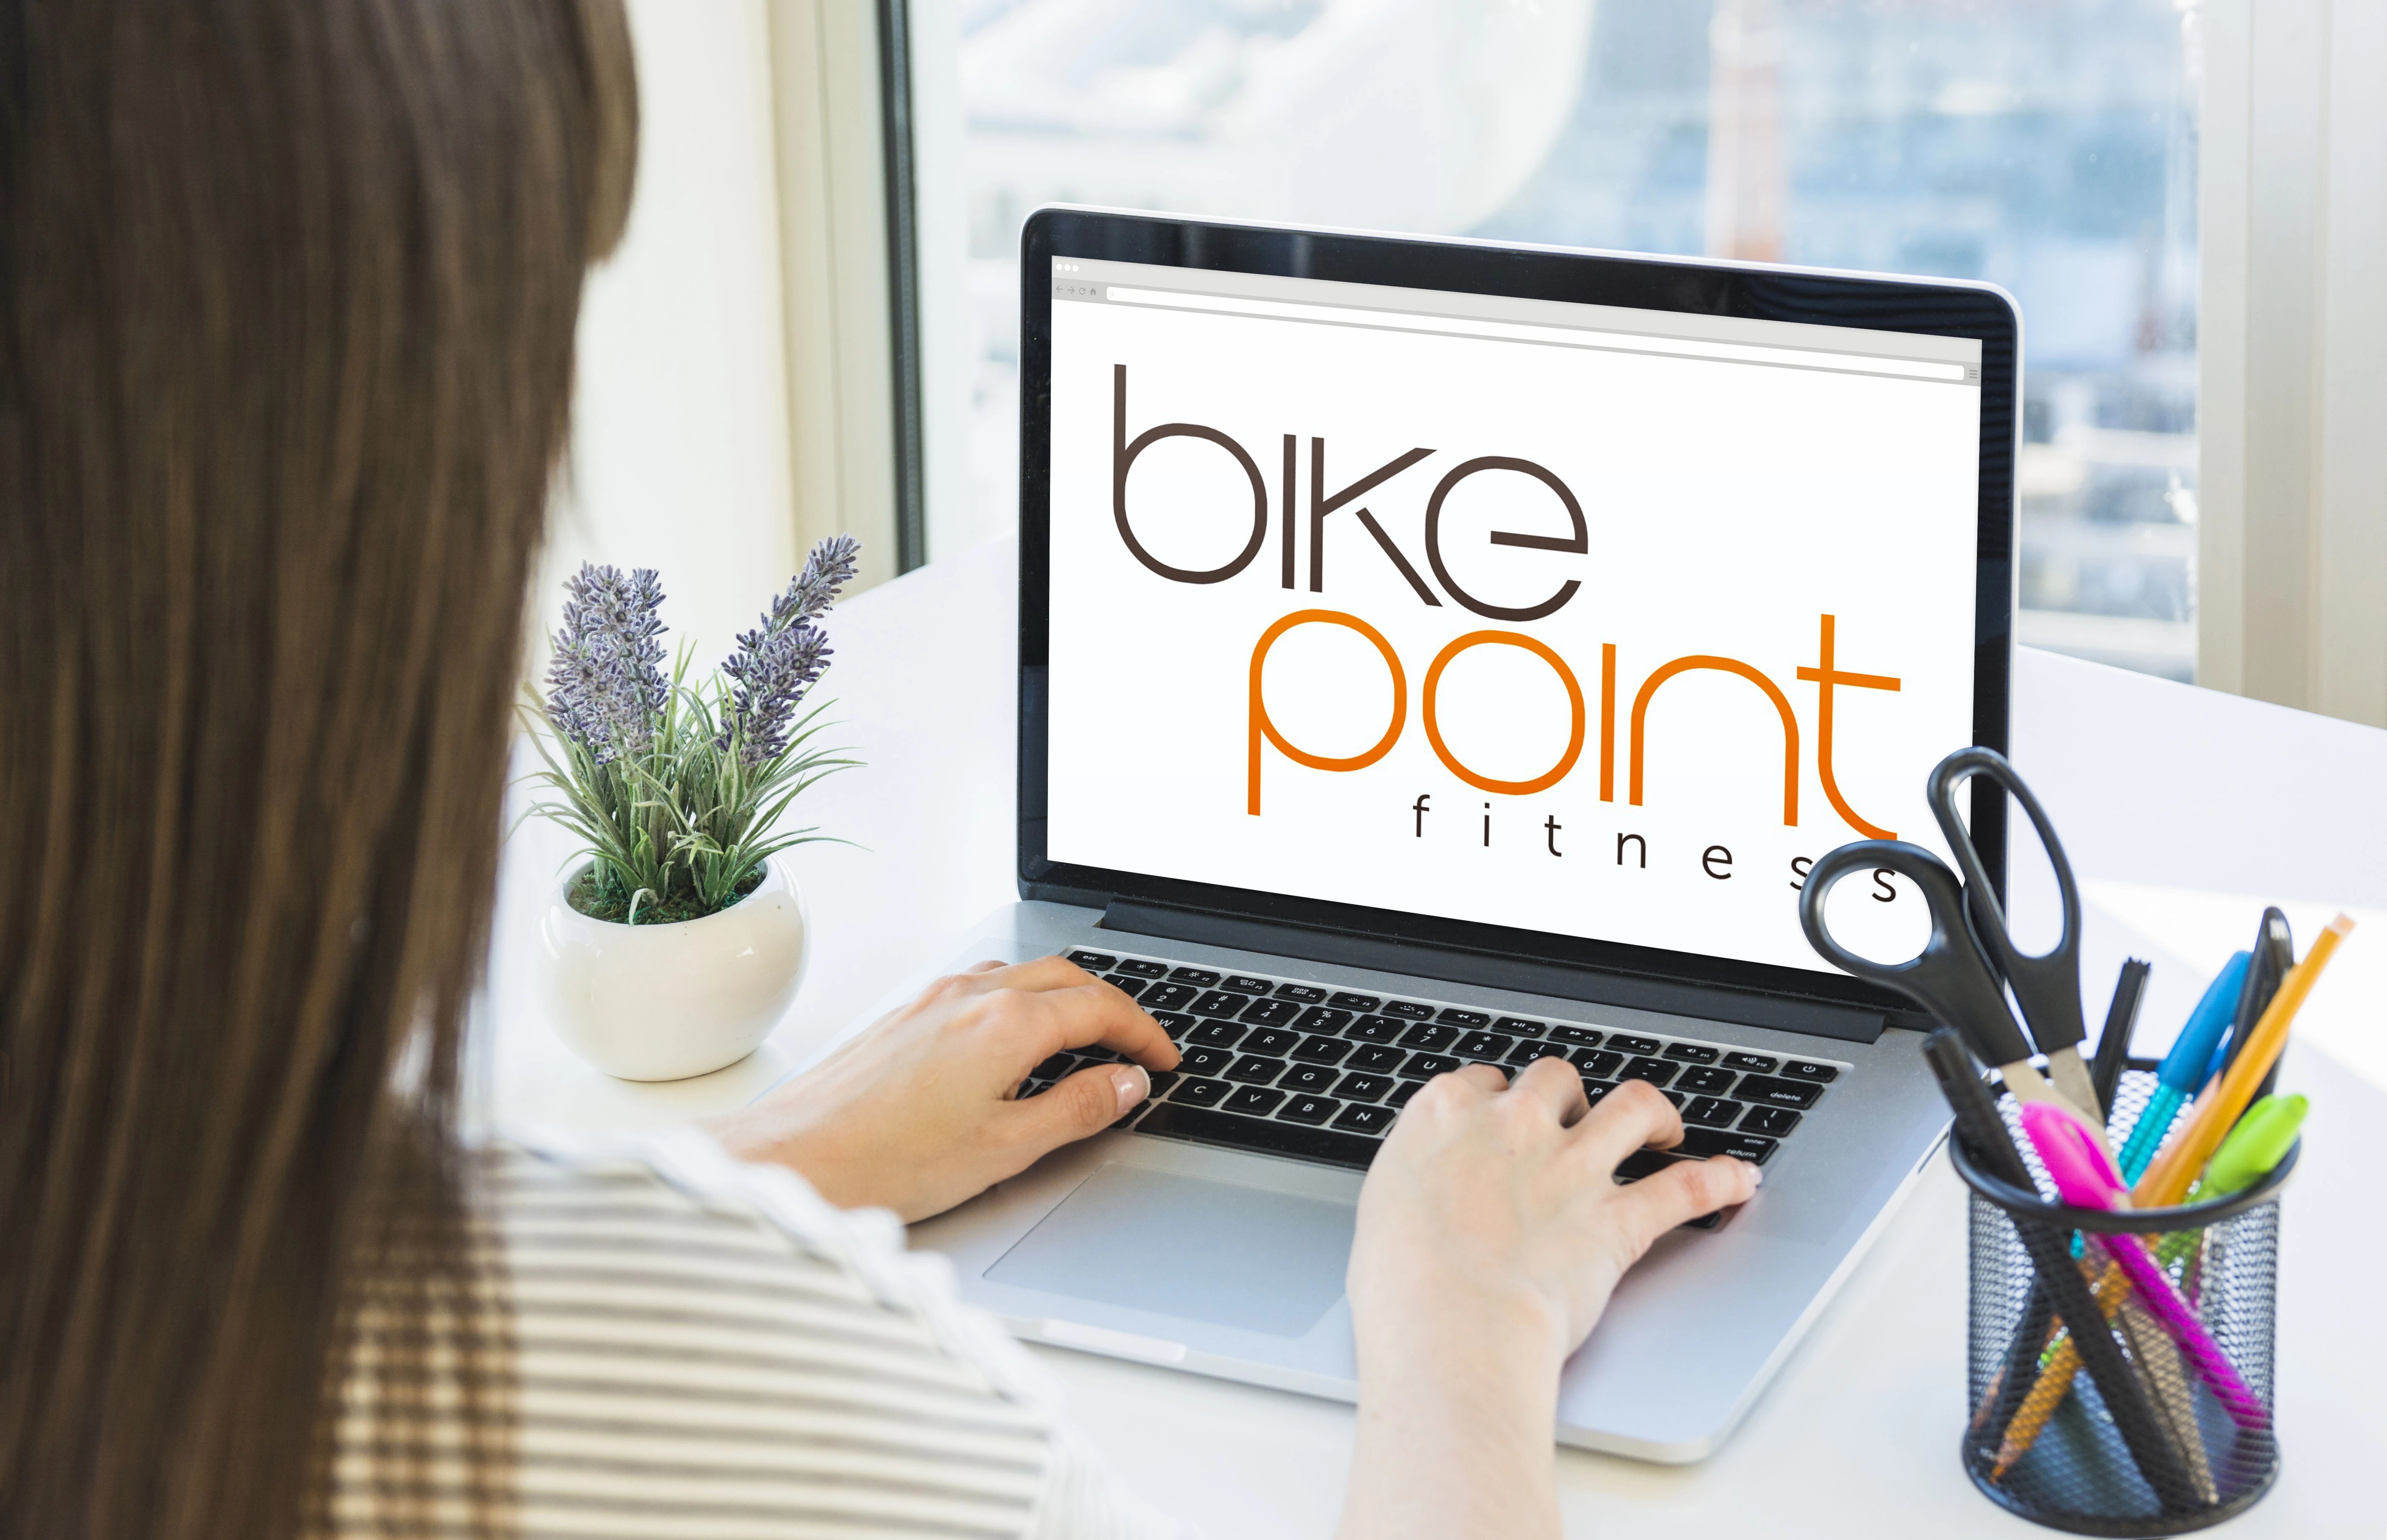 Case de sucesso: Bike Point e sua aposta de sucesso no e-commerce